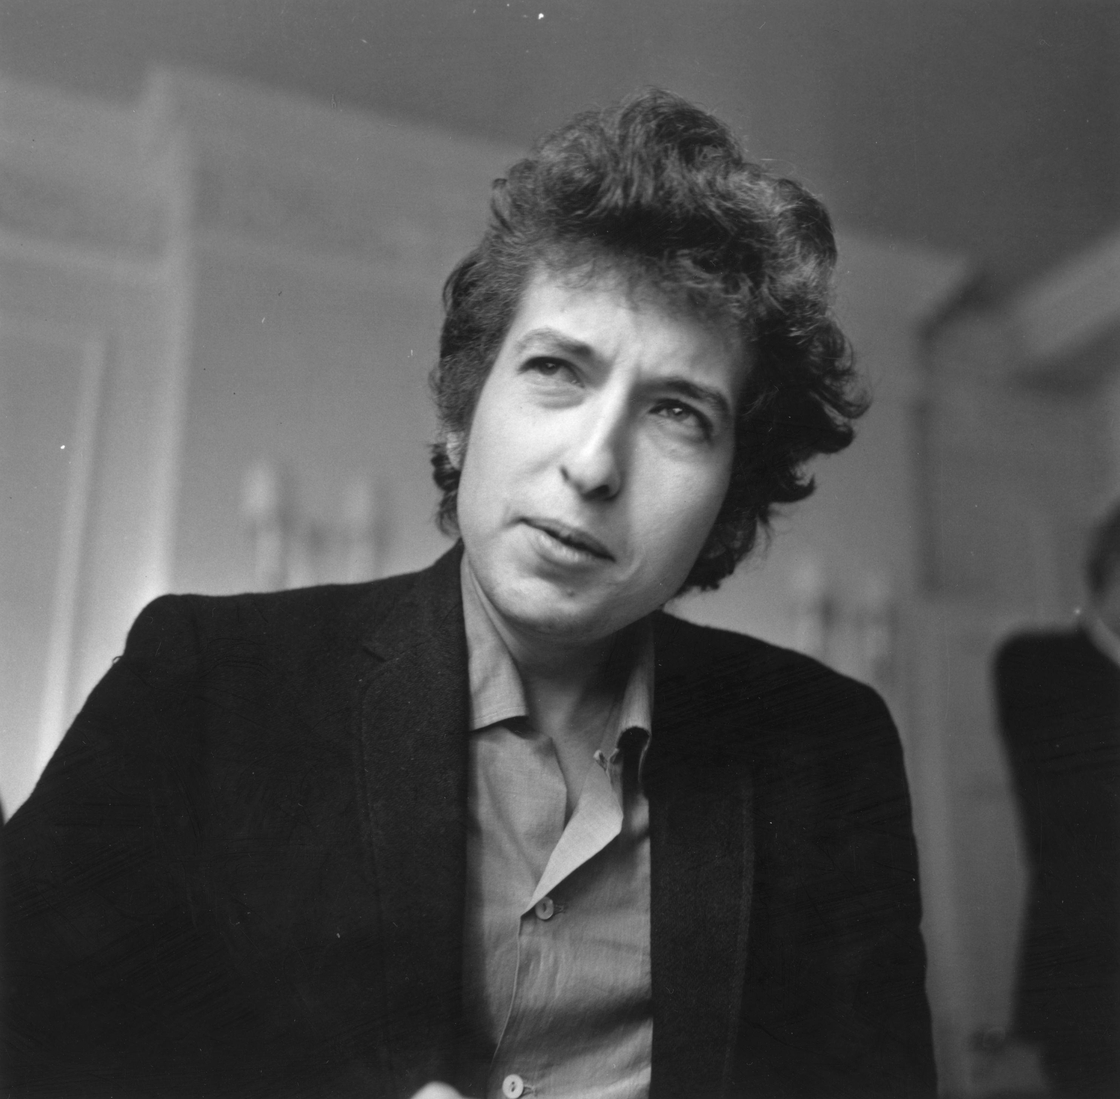 Image - Bob Dylan, 1965.